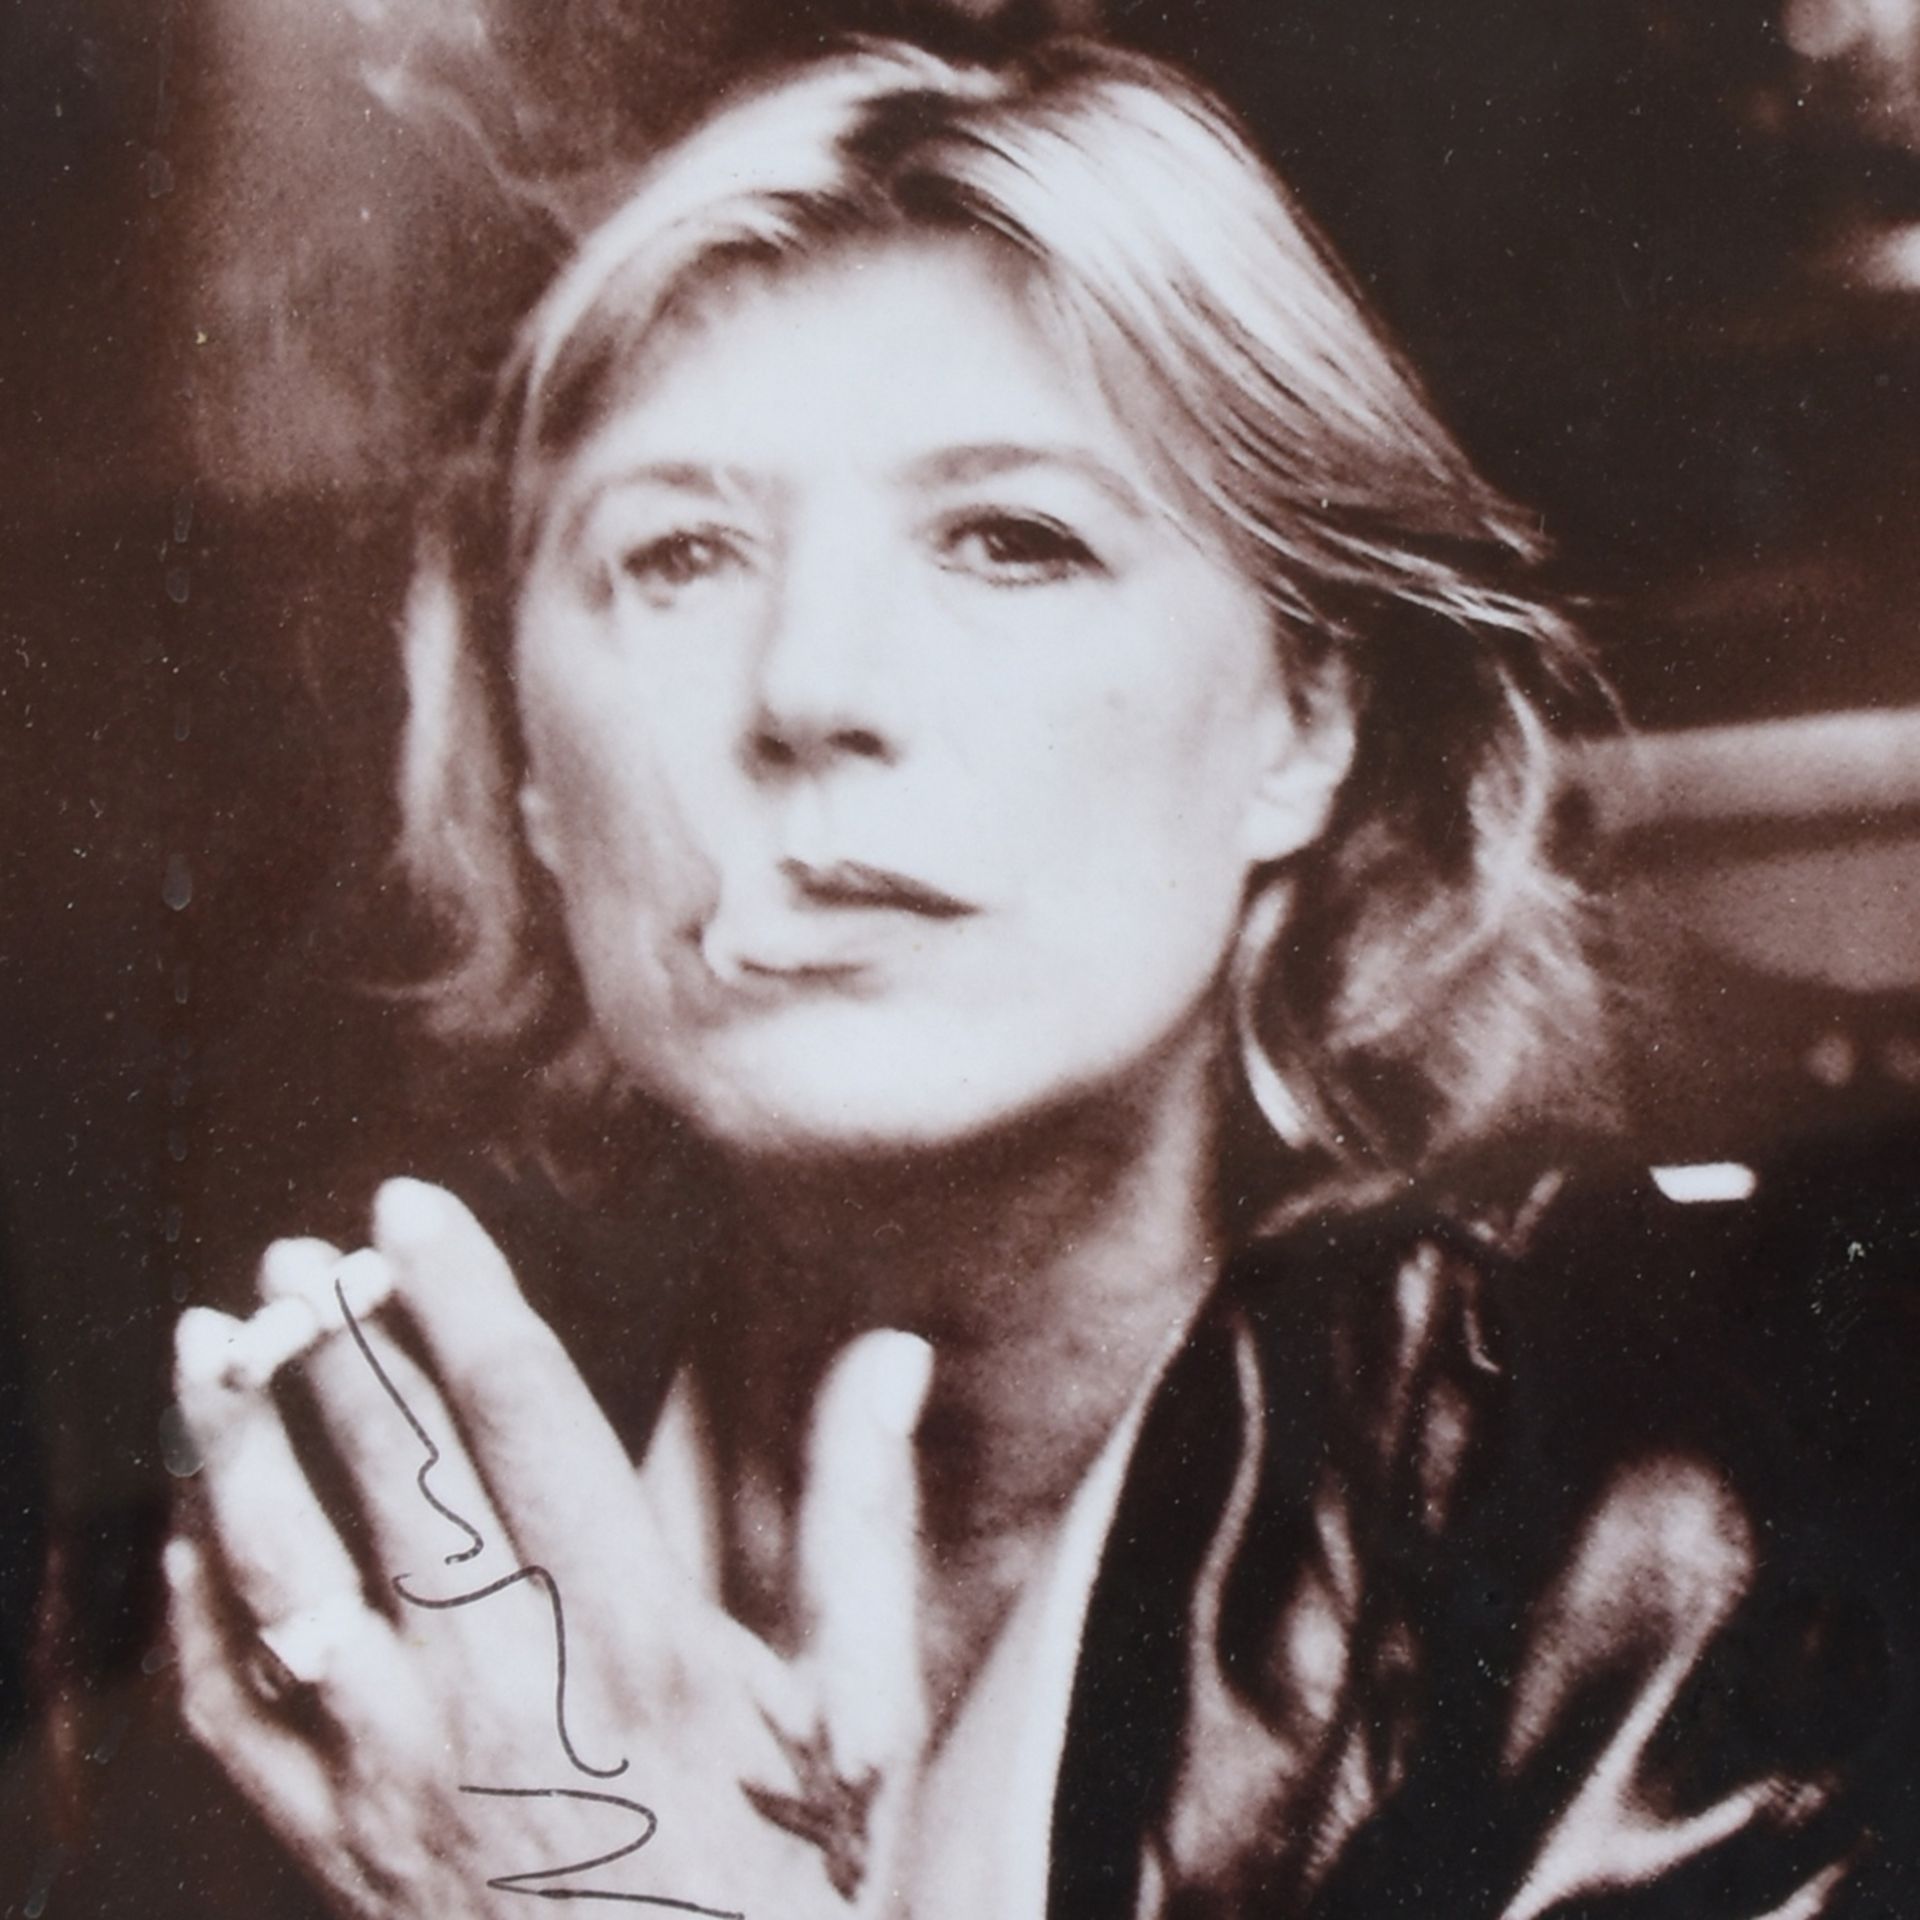 Newton, Helmut ? Fotoabzug, schwarz-weiß, Frau mit offenen Haaren und Zigarette, im Bild signiert,